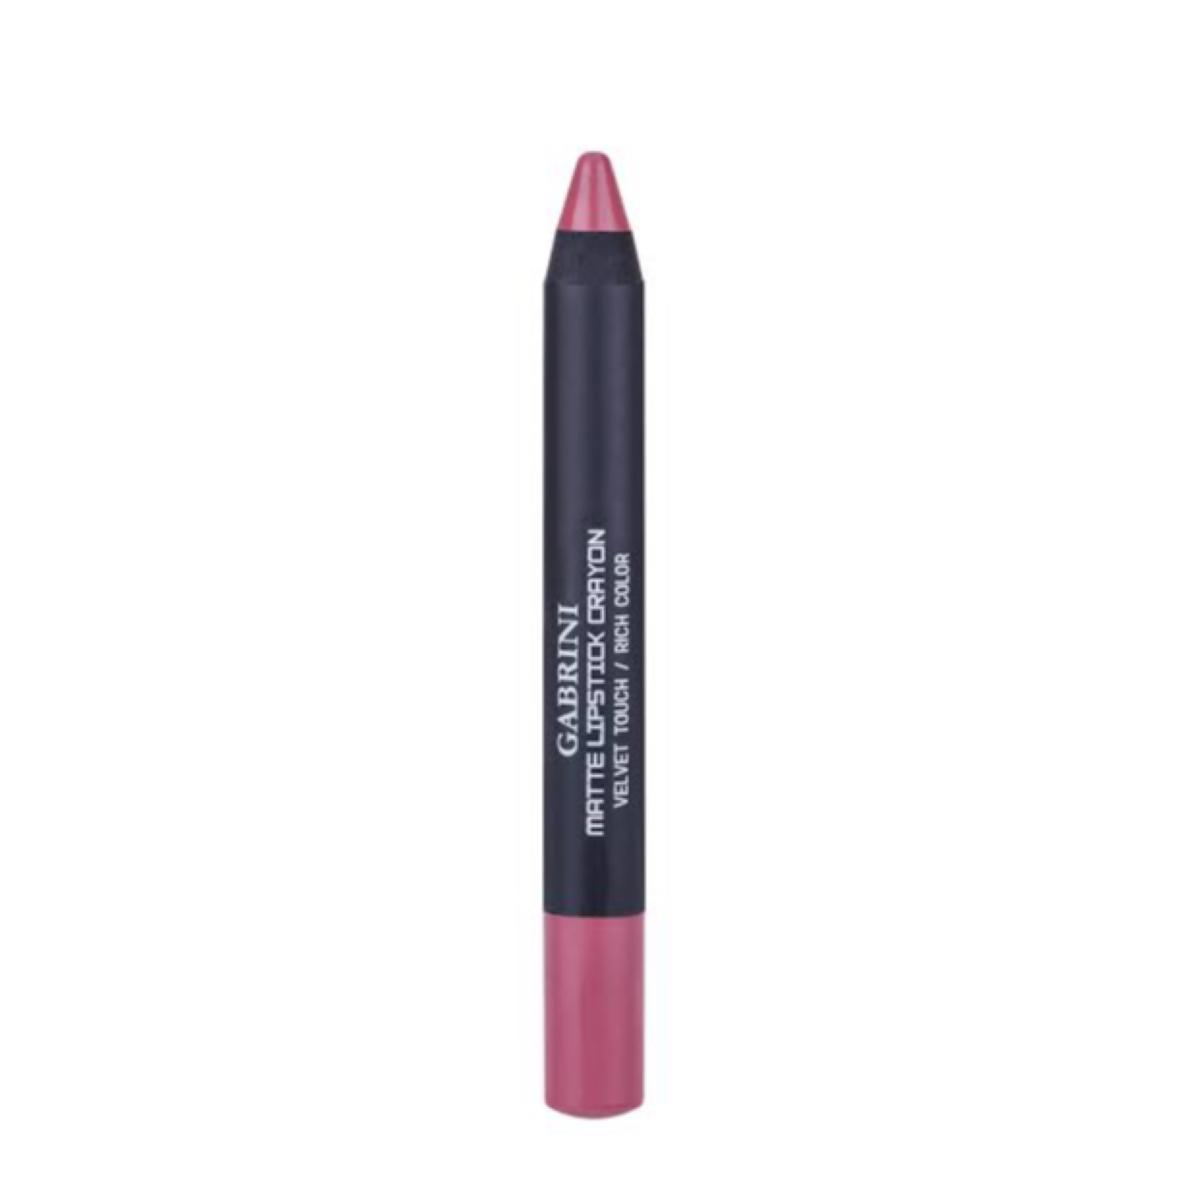 ر‌ژ لب مدادی مات - matte lipstick crayon